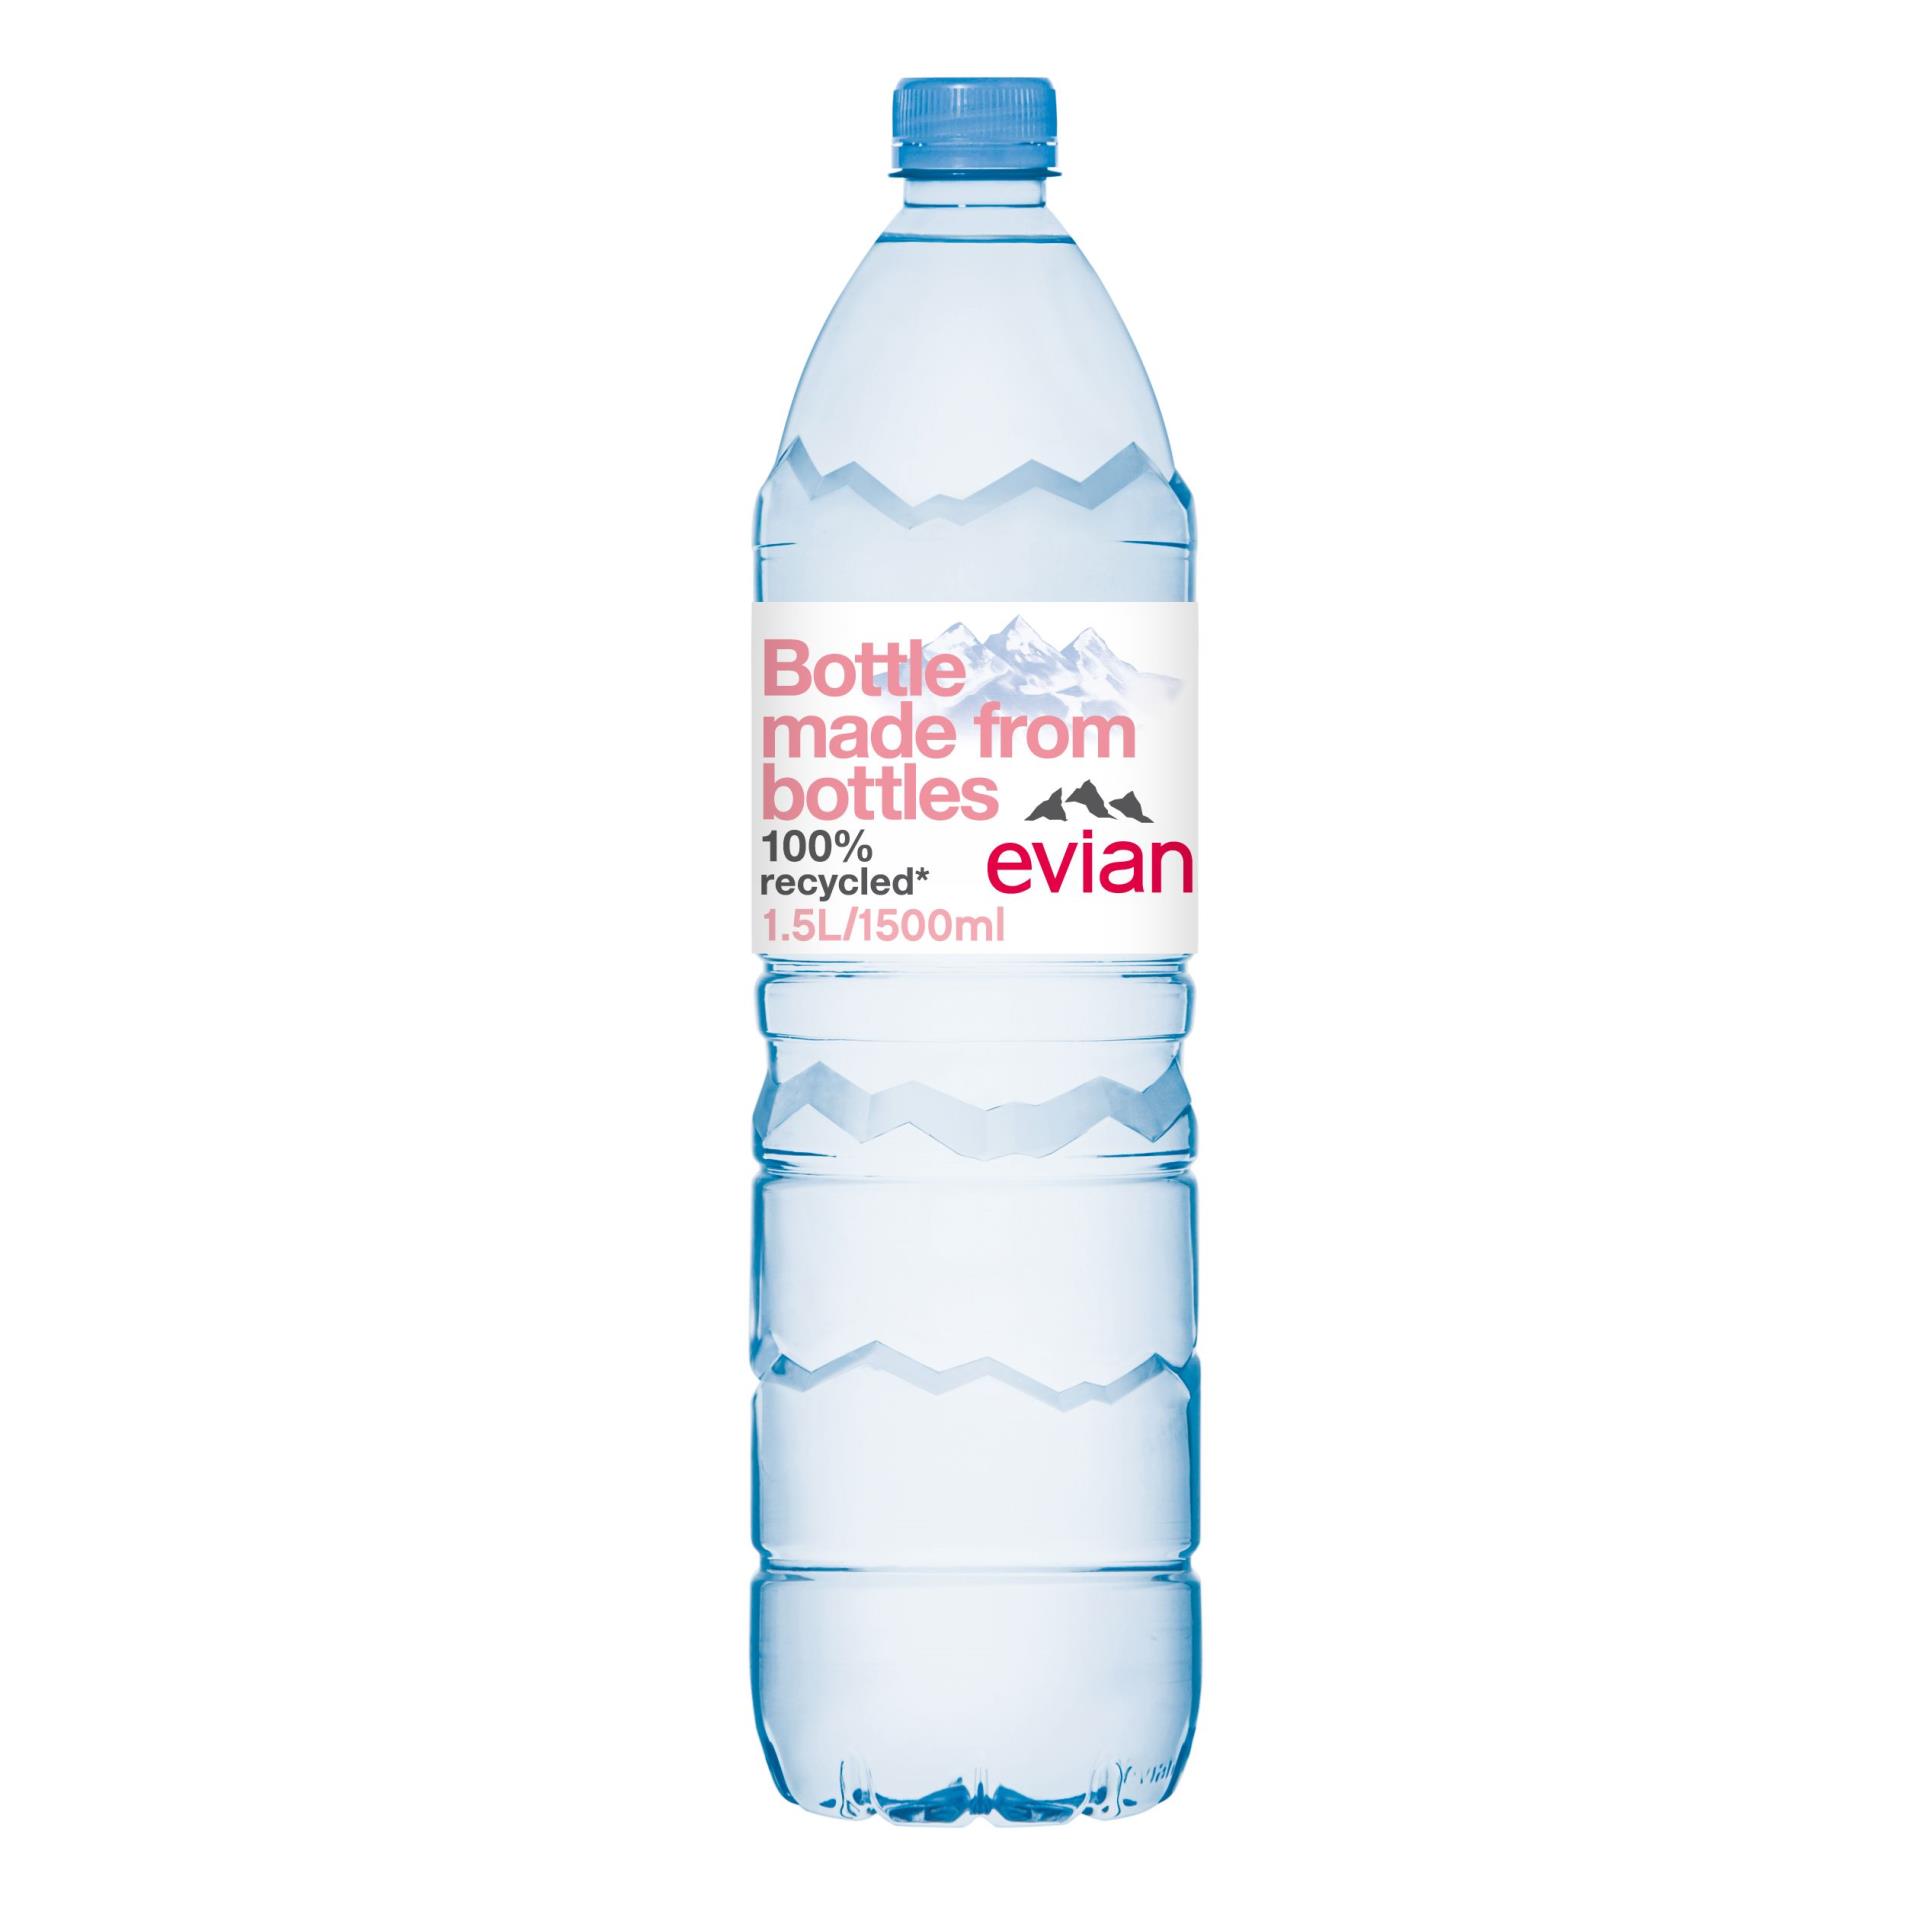 Voda Evian - neperlivá, 6 x 1,5 l